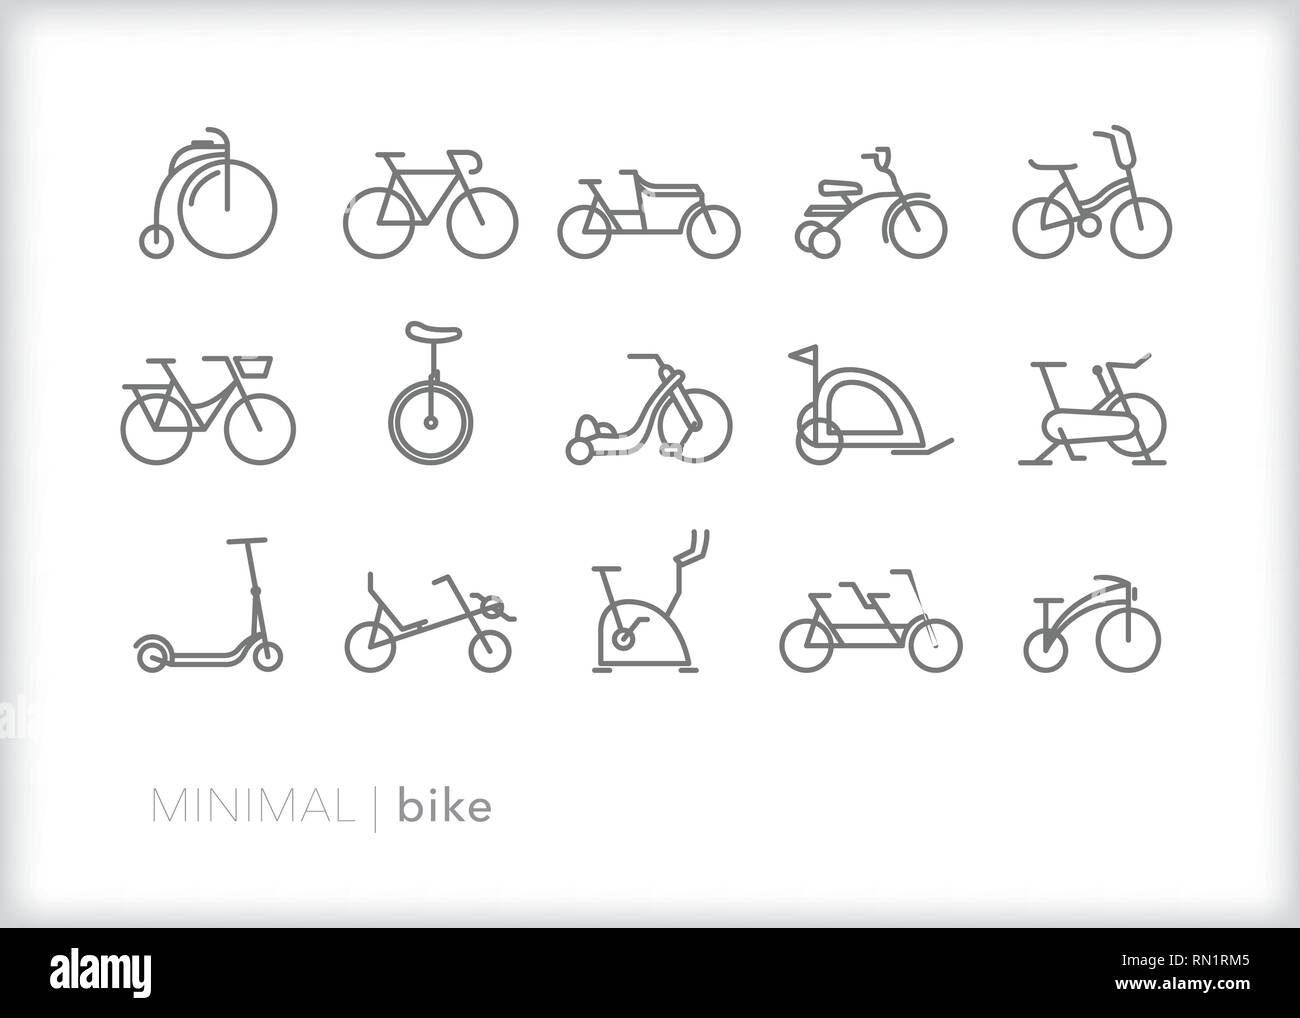 Set di 15 linea bike le icone che mostrano i vari tipi di biciclette compresi in vecchio stile, cruiser, esercizio, tandem recumbent, triciclo, e monociclo Illustrazione Vettoriale